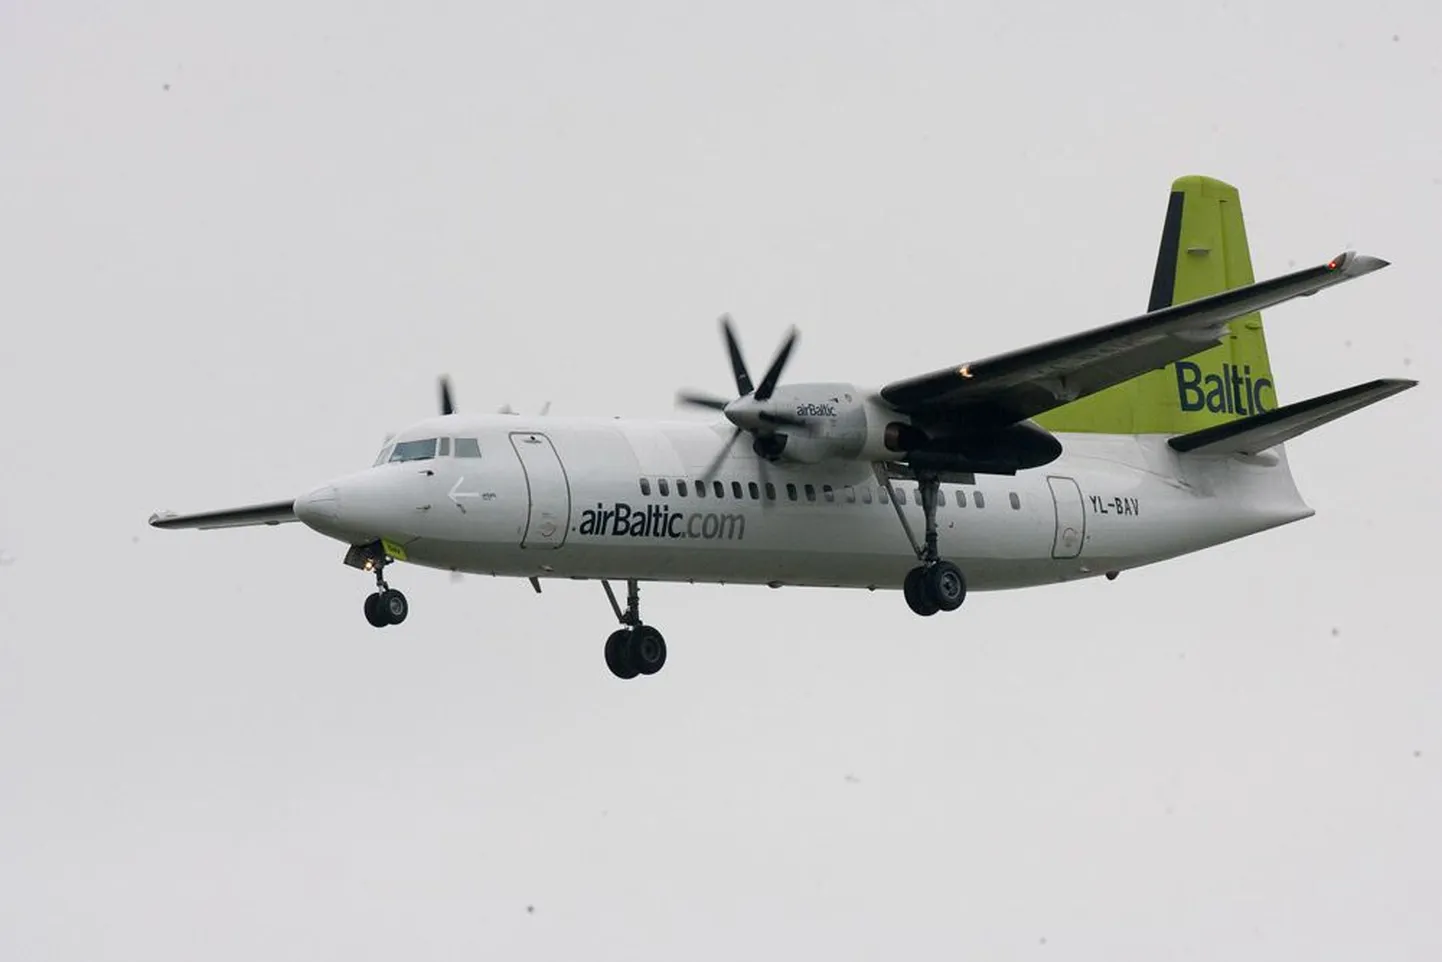 Большая часть клиентов аэропорта Тарту летала самолетами латвийской фирмы Air Baltic, последний рейс которой состоялся в конце июля.